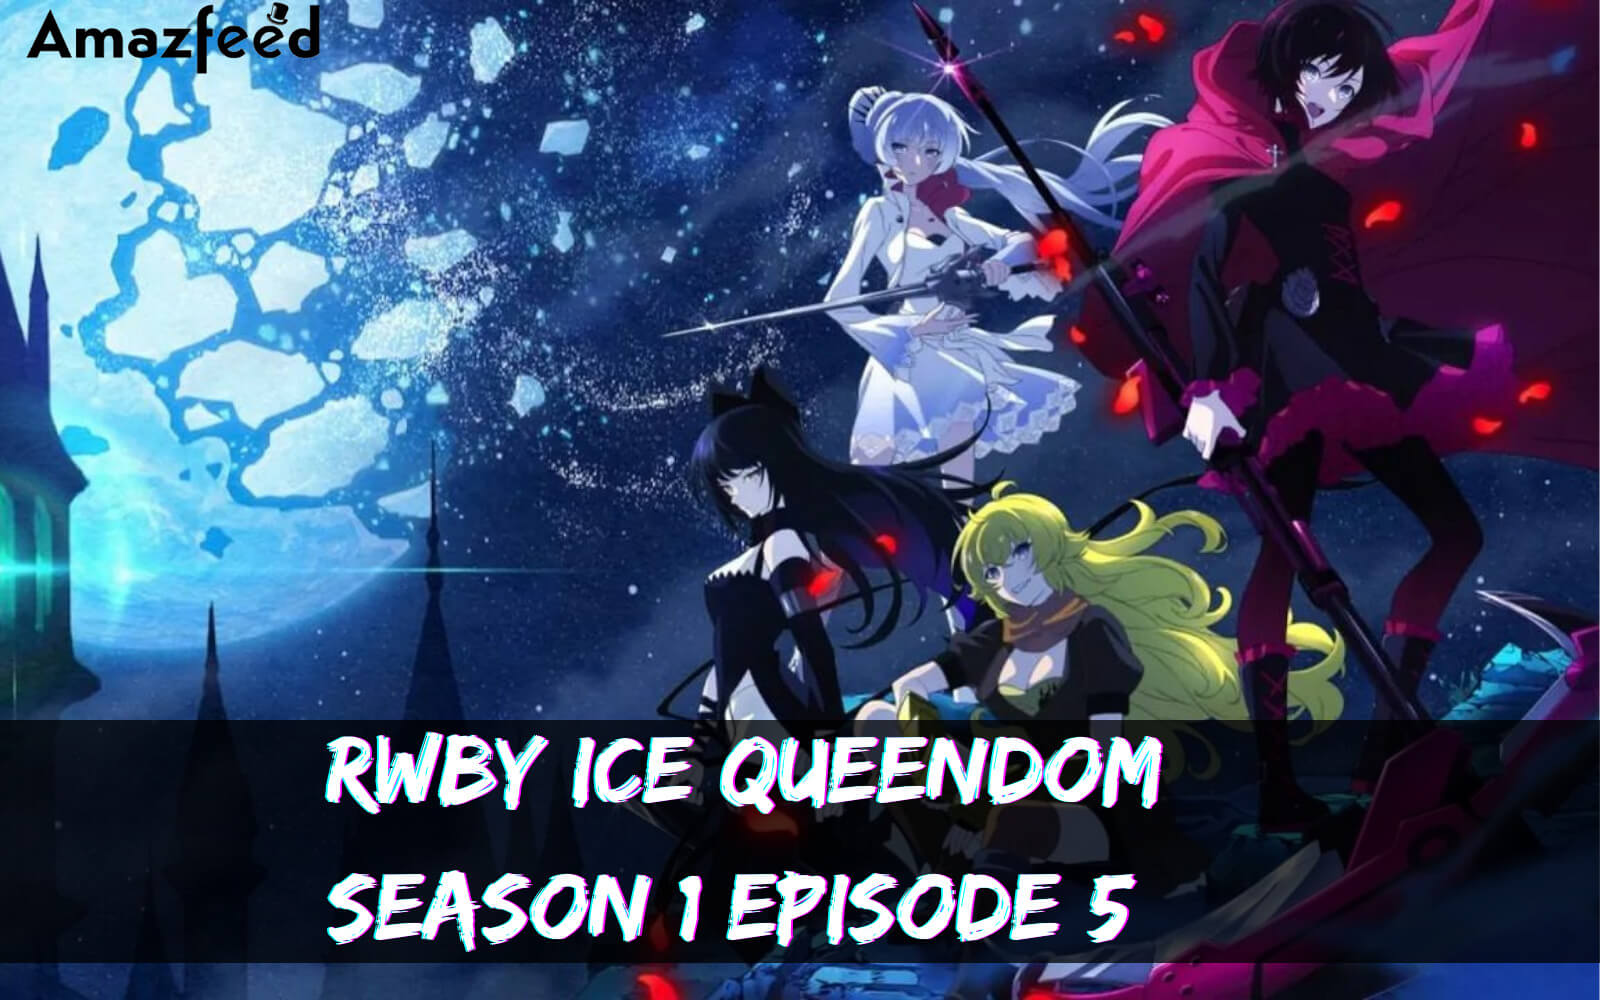 RWBY Ice Queendom Season 1 episode 5 release date